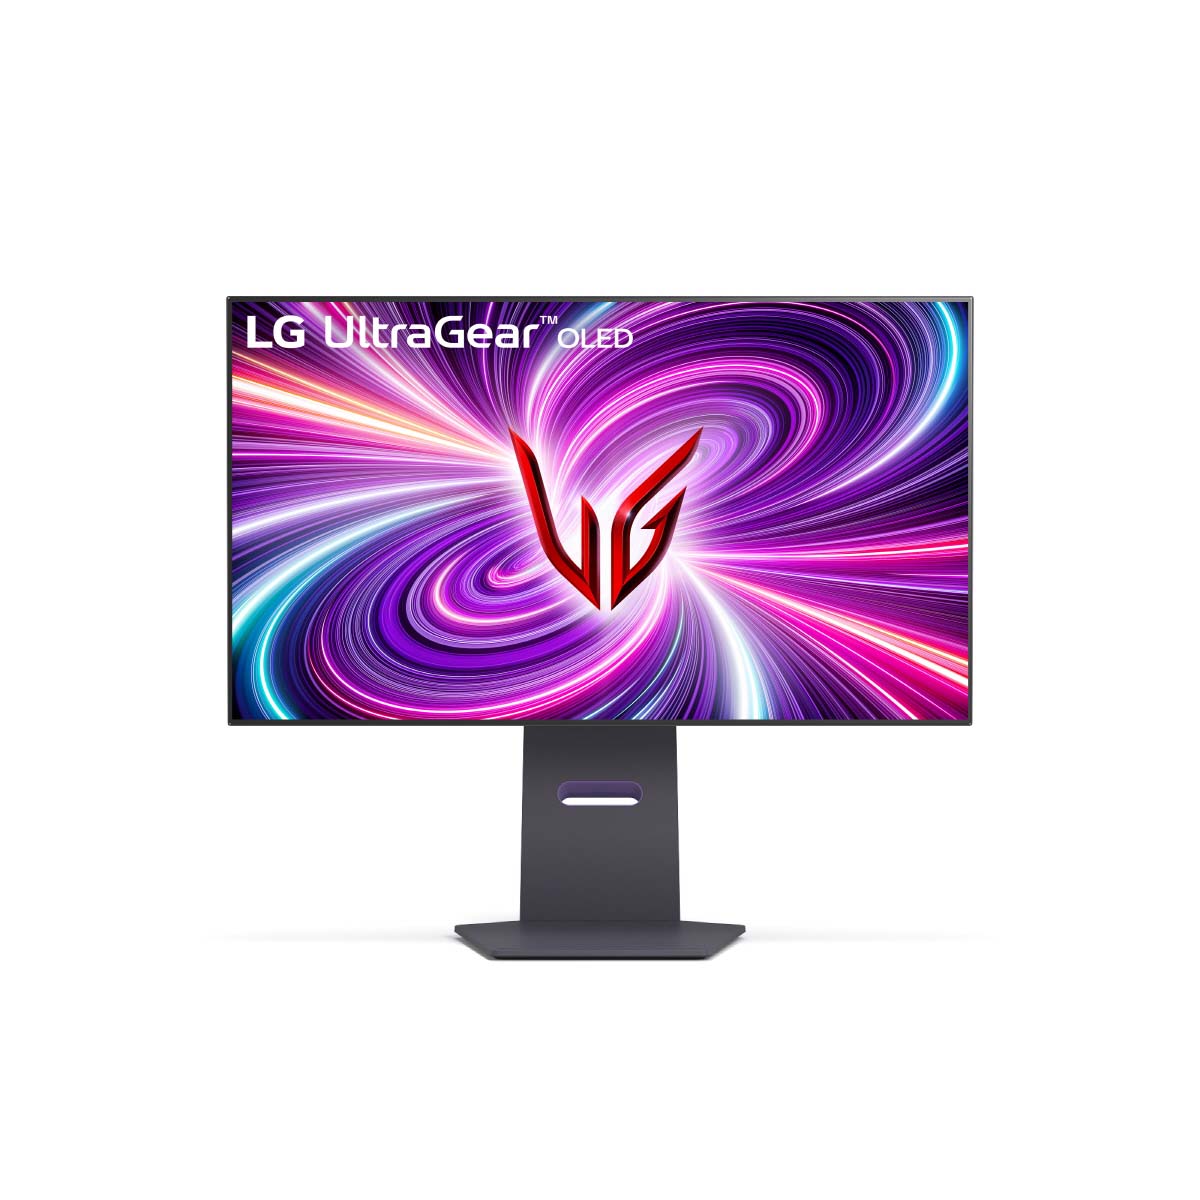 LG anuncia monitor UltraGear OLED con Dual-Hz